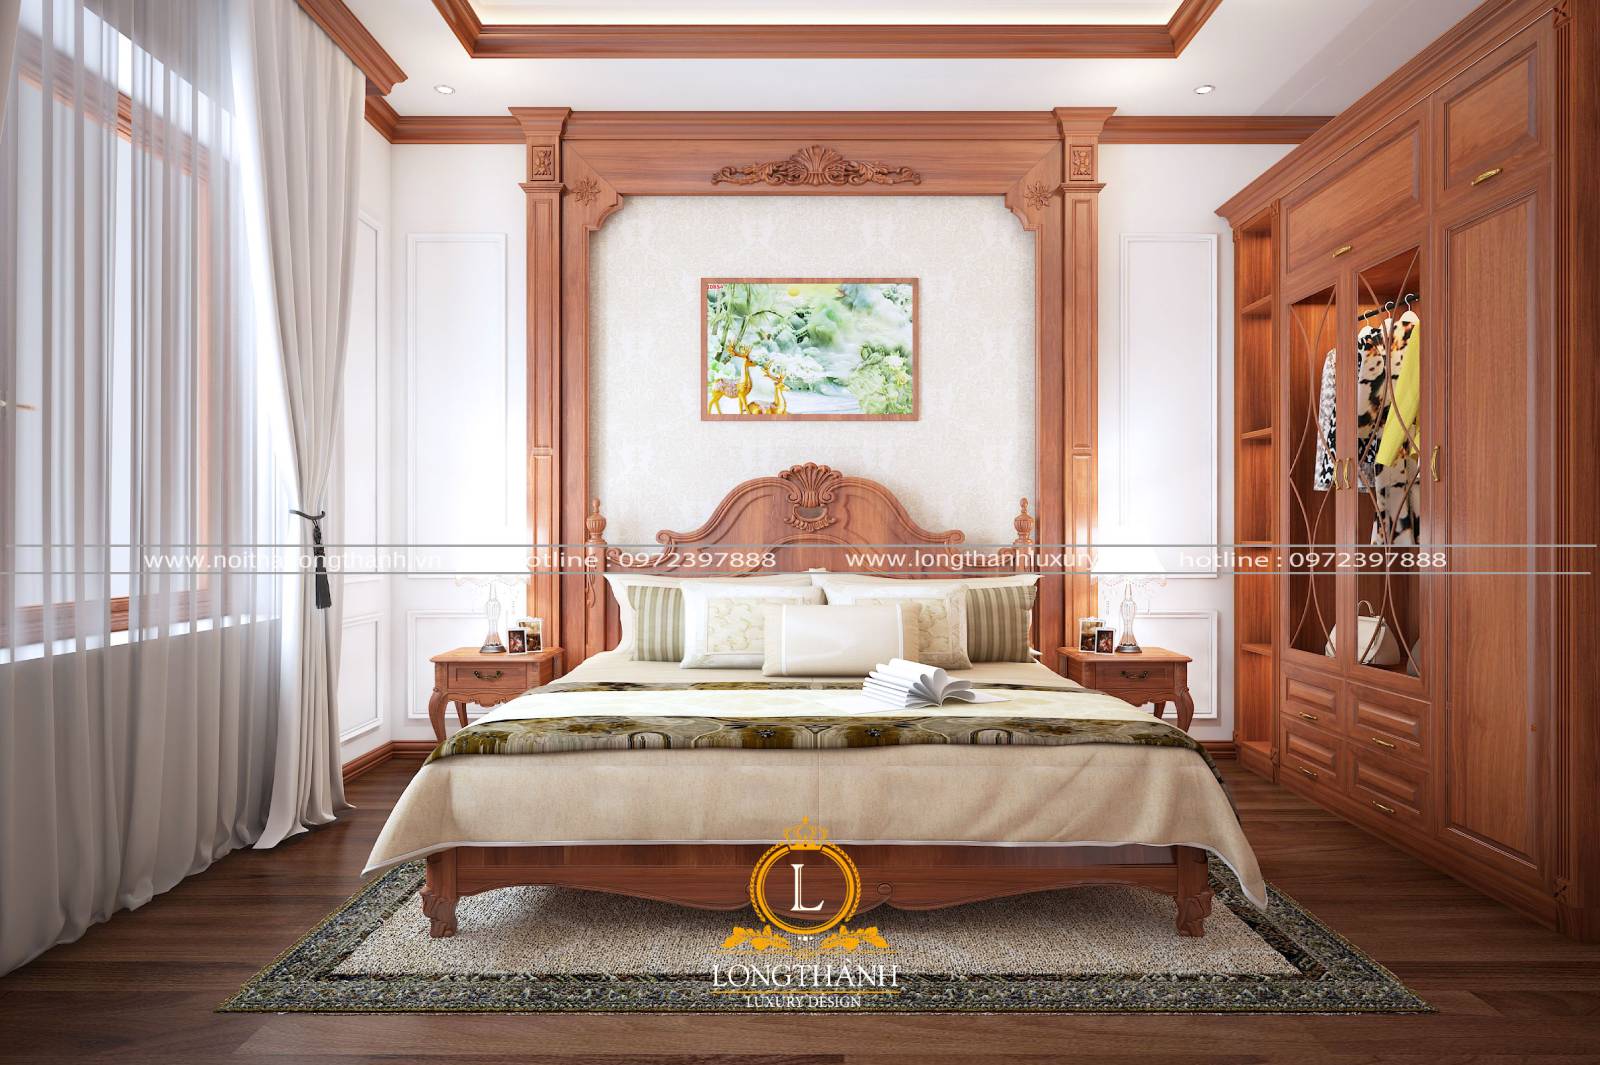 Mẫu phòng ngủ tân cổ điển đẹp đầy đủ tiện nghi sang trọng hiện đại